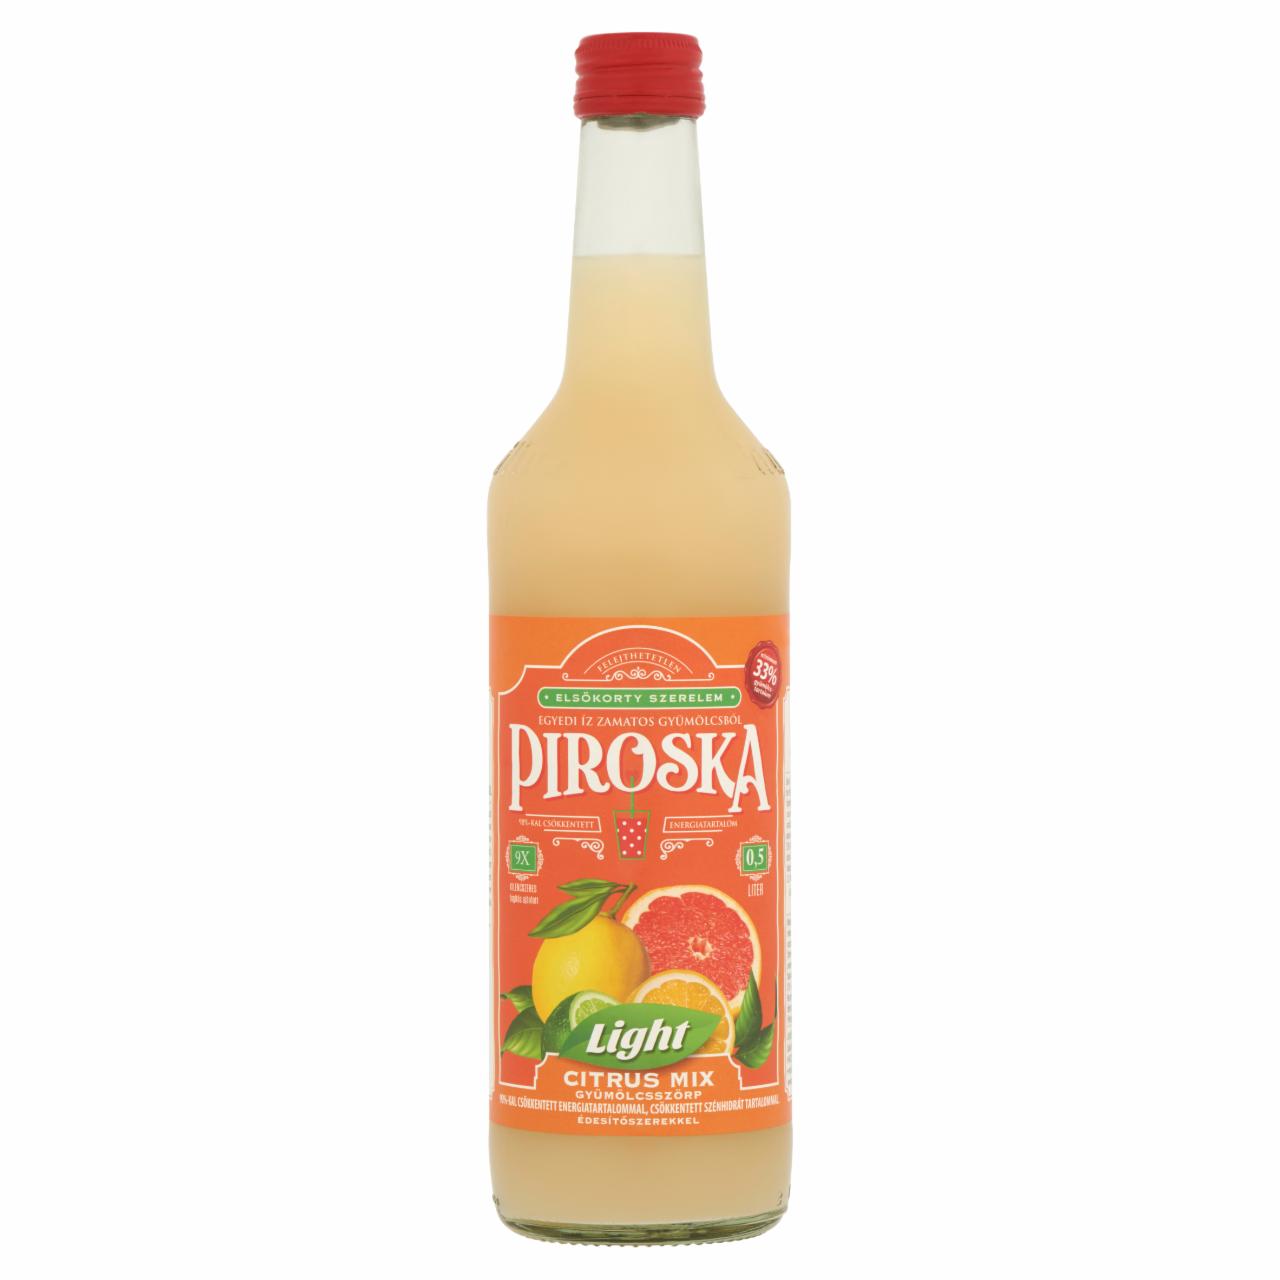 Képek - Piroska Light citrus mix gyümölcsszörp édesítőszerekkel 0,5 l